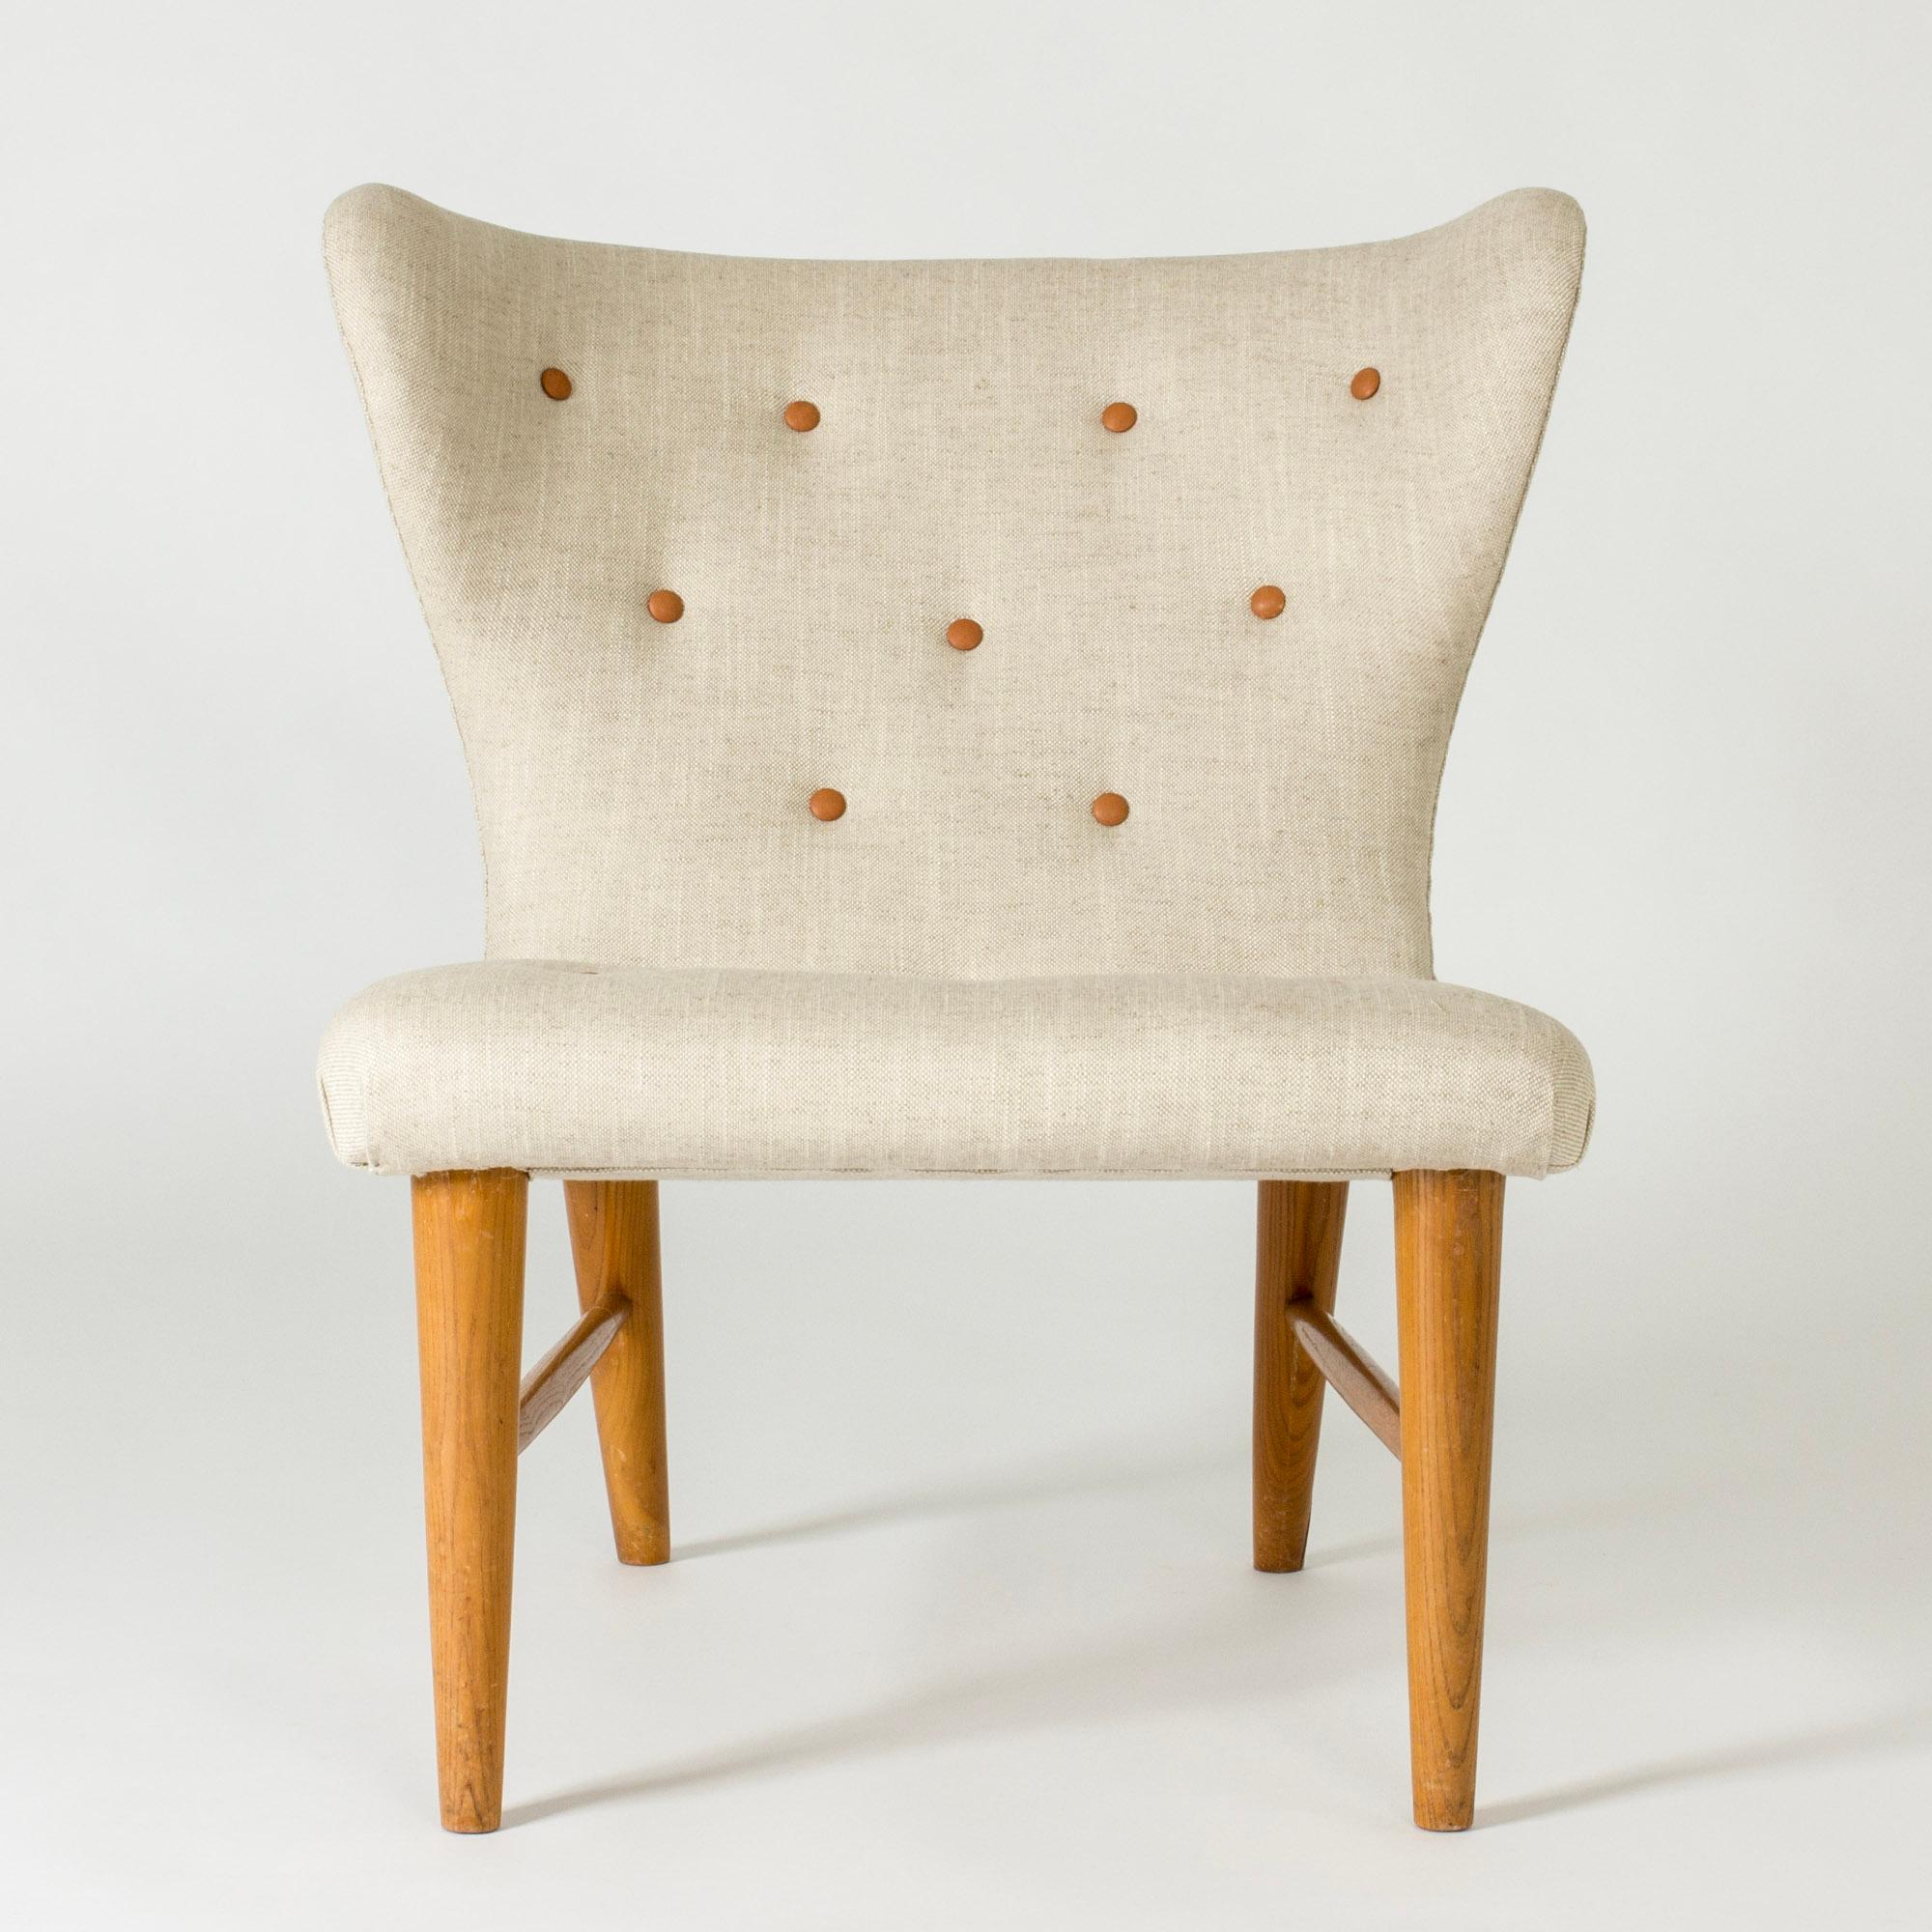 Swedish Vintage Modernist Lounge Chairs by Erik Karlén, Sweden, 1940s For Sale